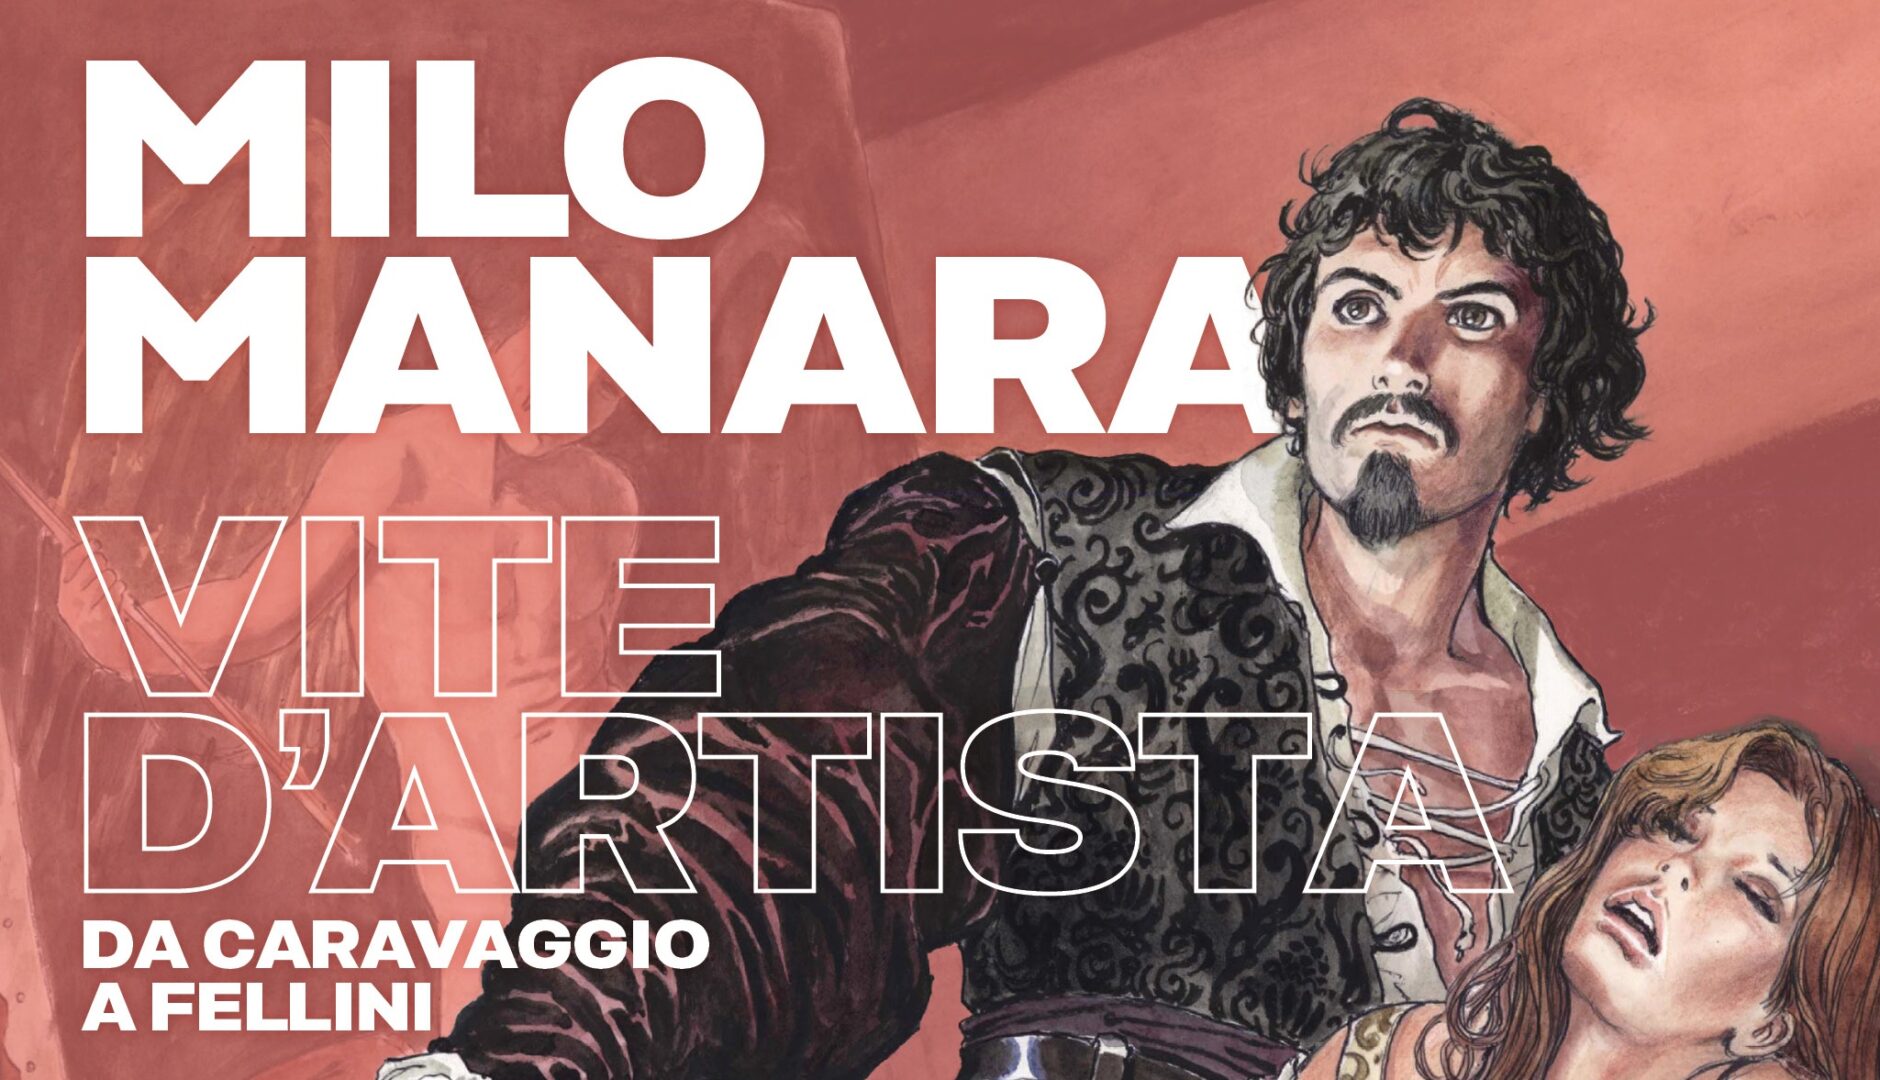 Milo Manara: Vite D’Artista – Da Caravaggio a Fellini